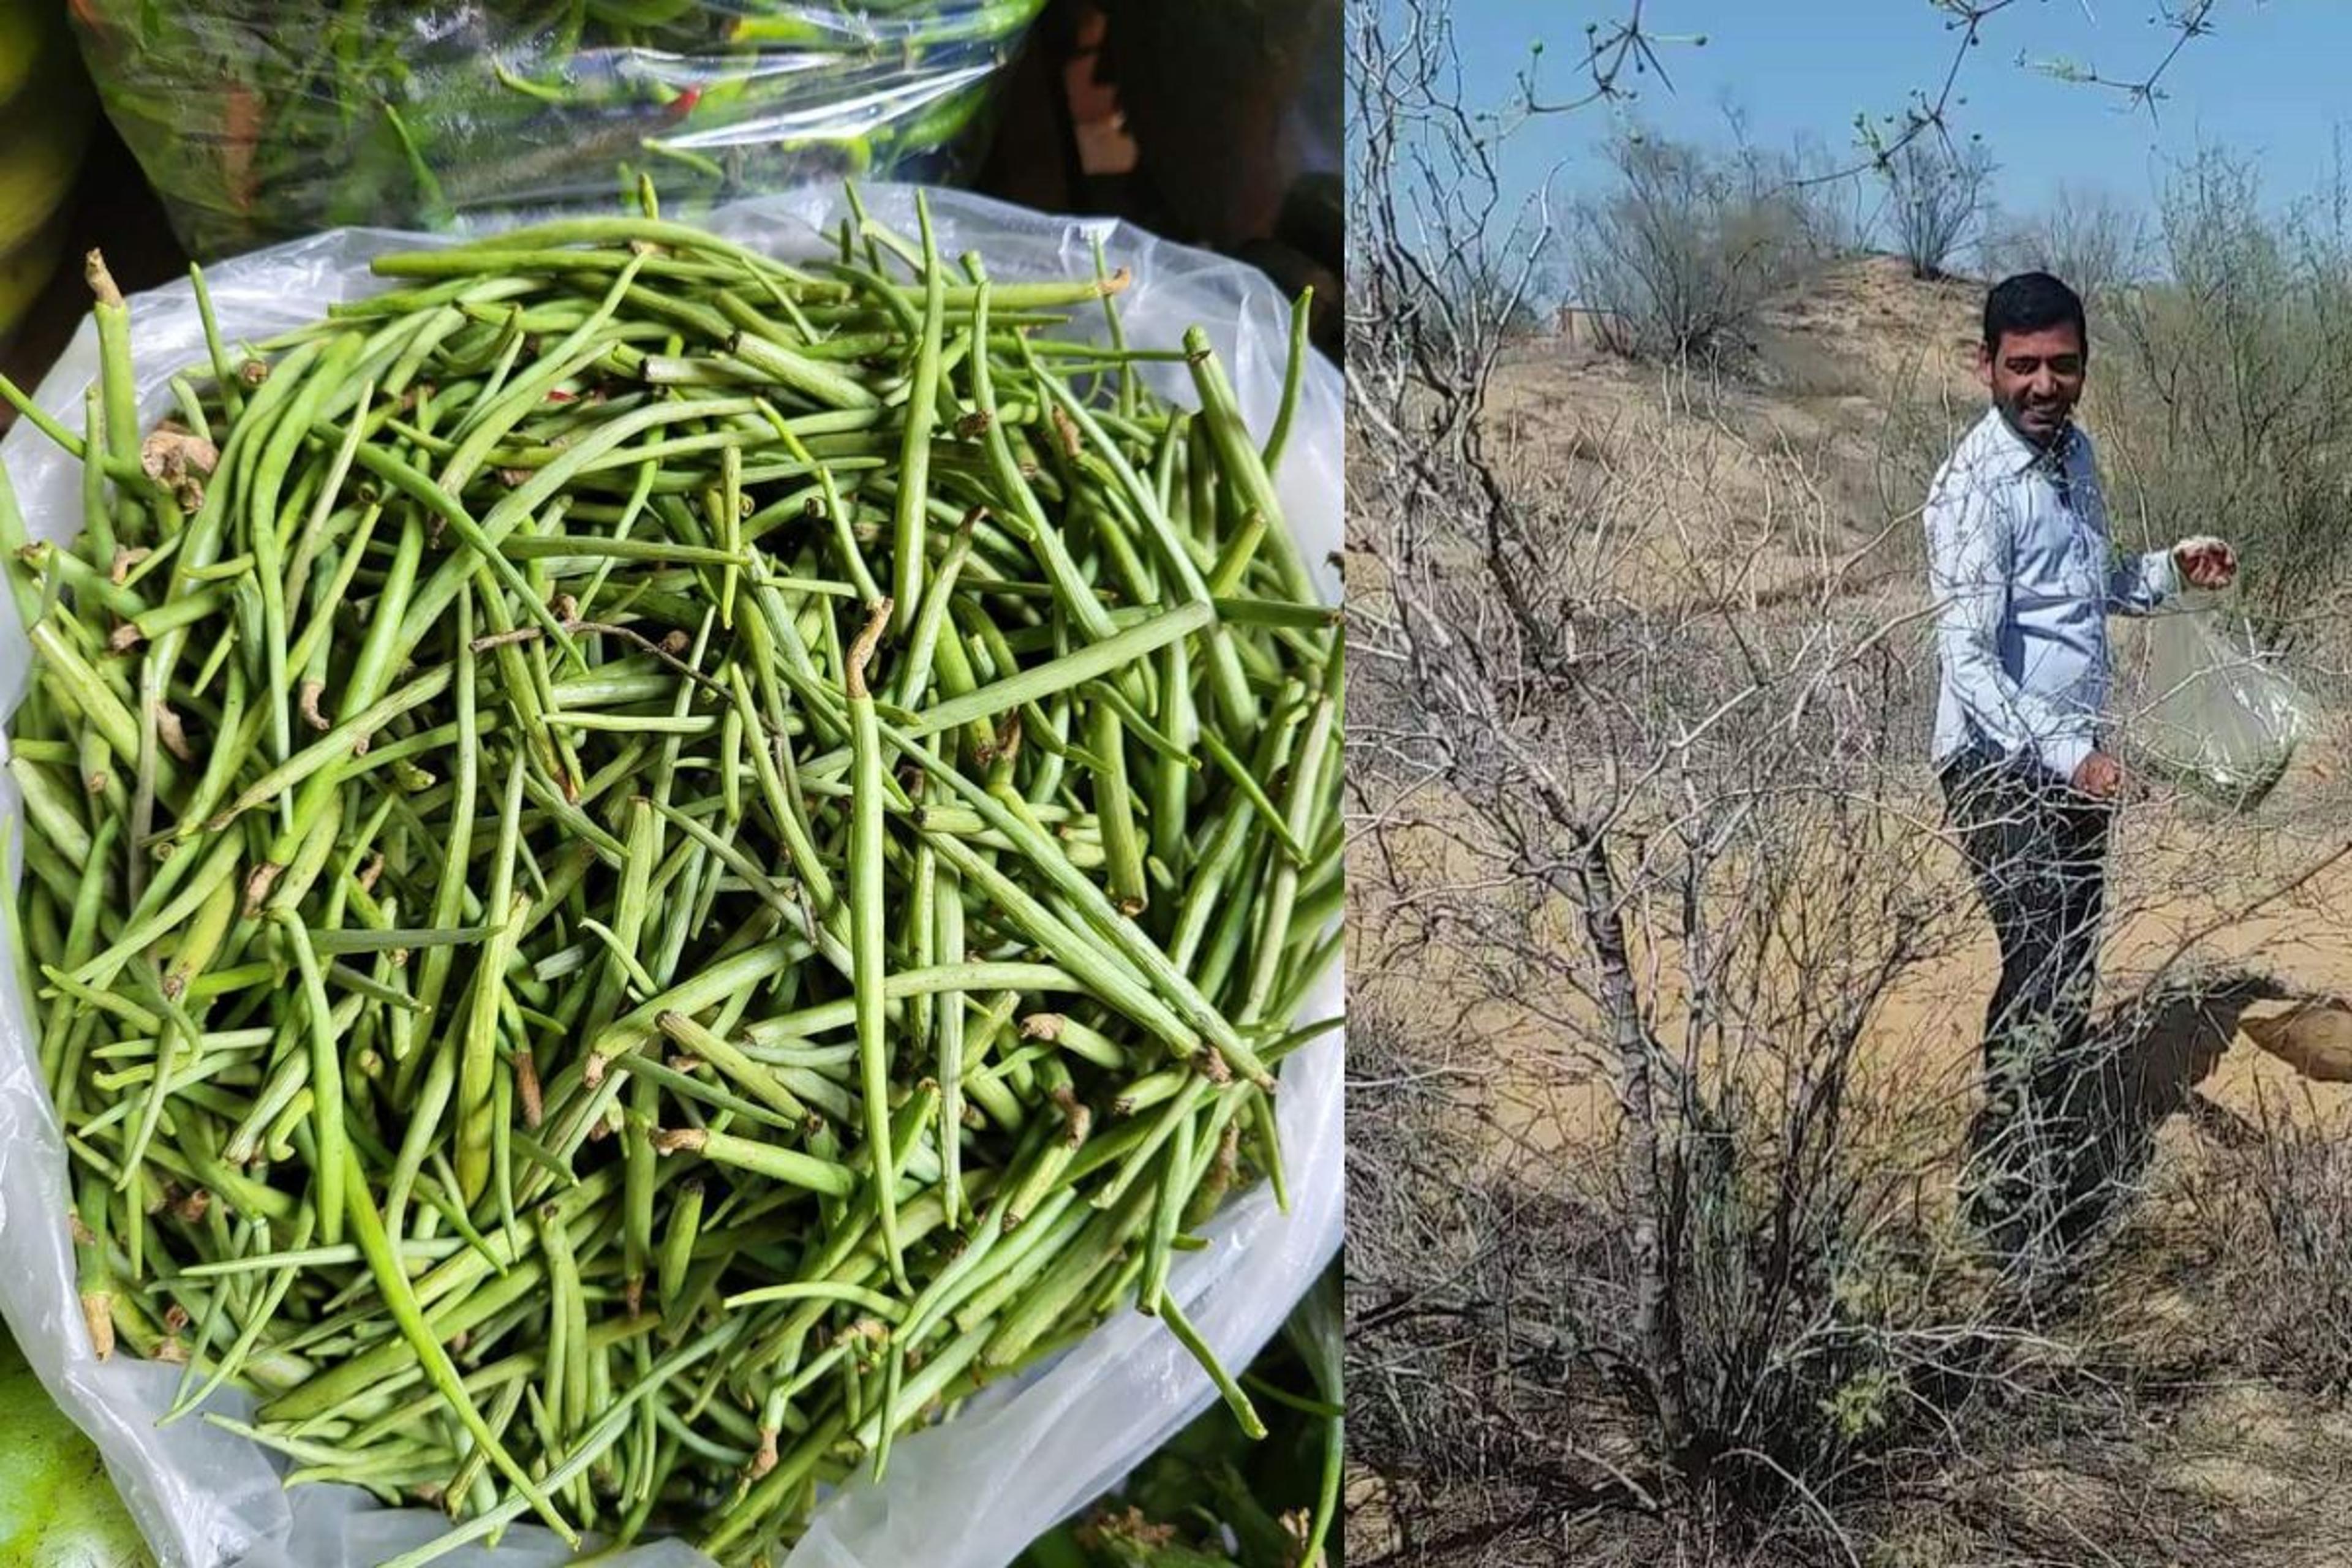 राजस्थानी मरू वनस्पतियां स्वास्थ्यवर्धक होने के साथ-साथ बन रही आय का साधन, अब
देश-विदेश में भी बढ़ी डिमांड